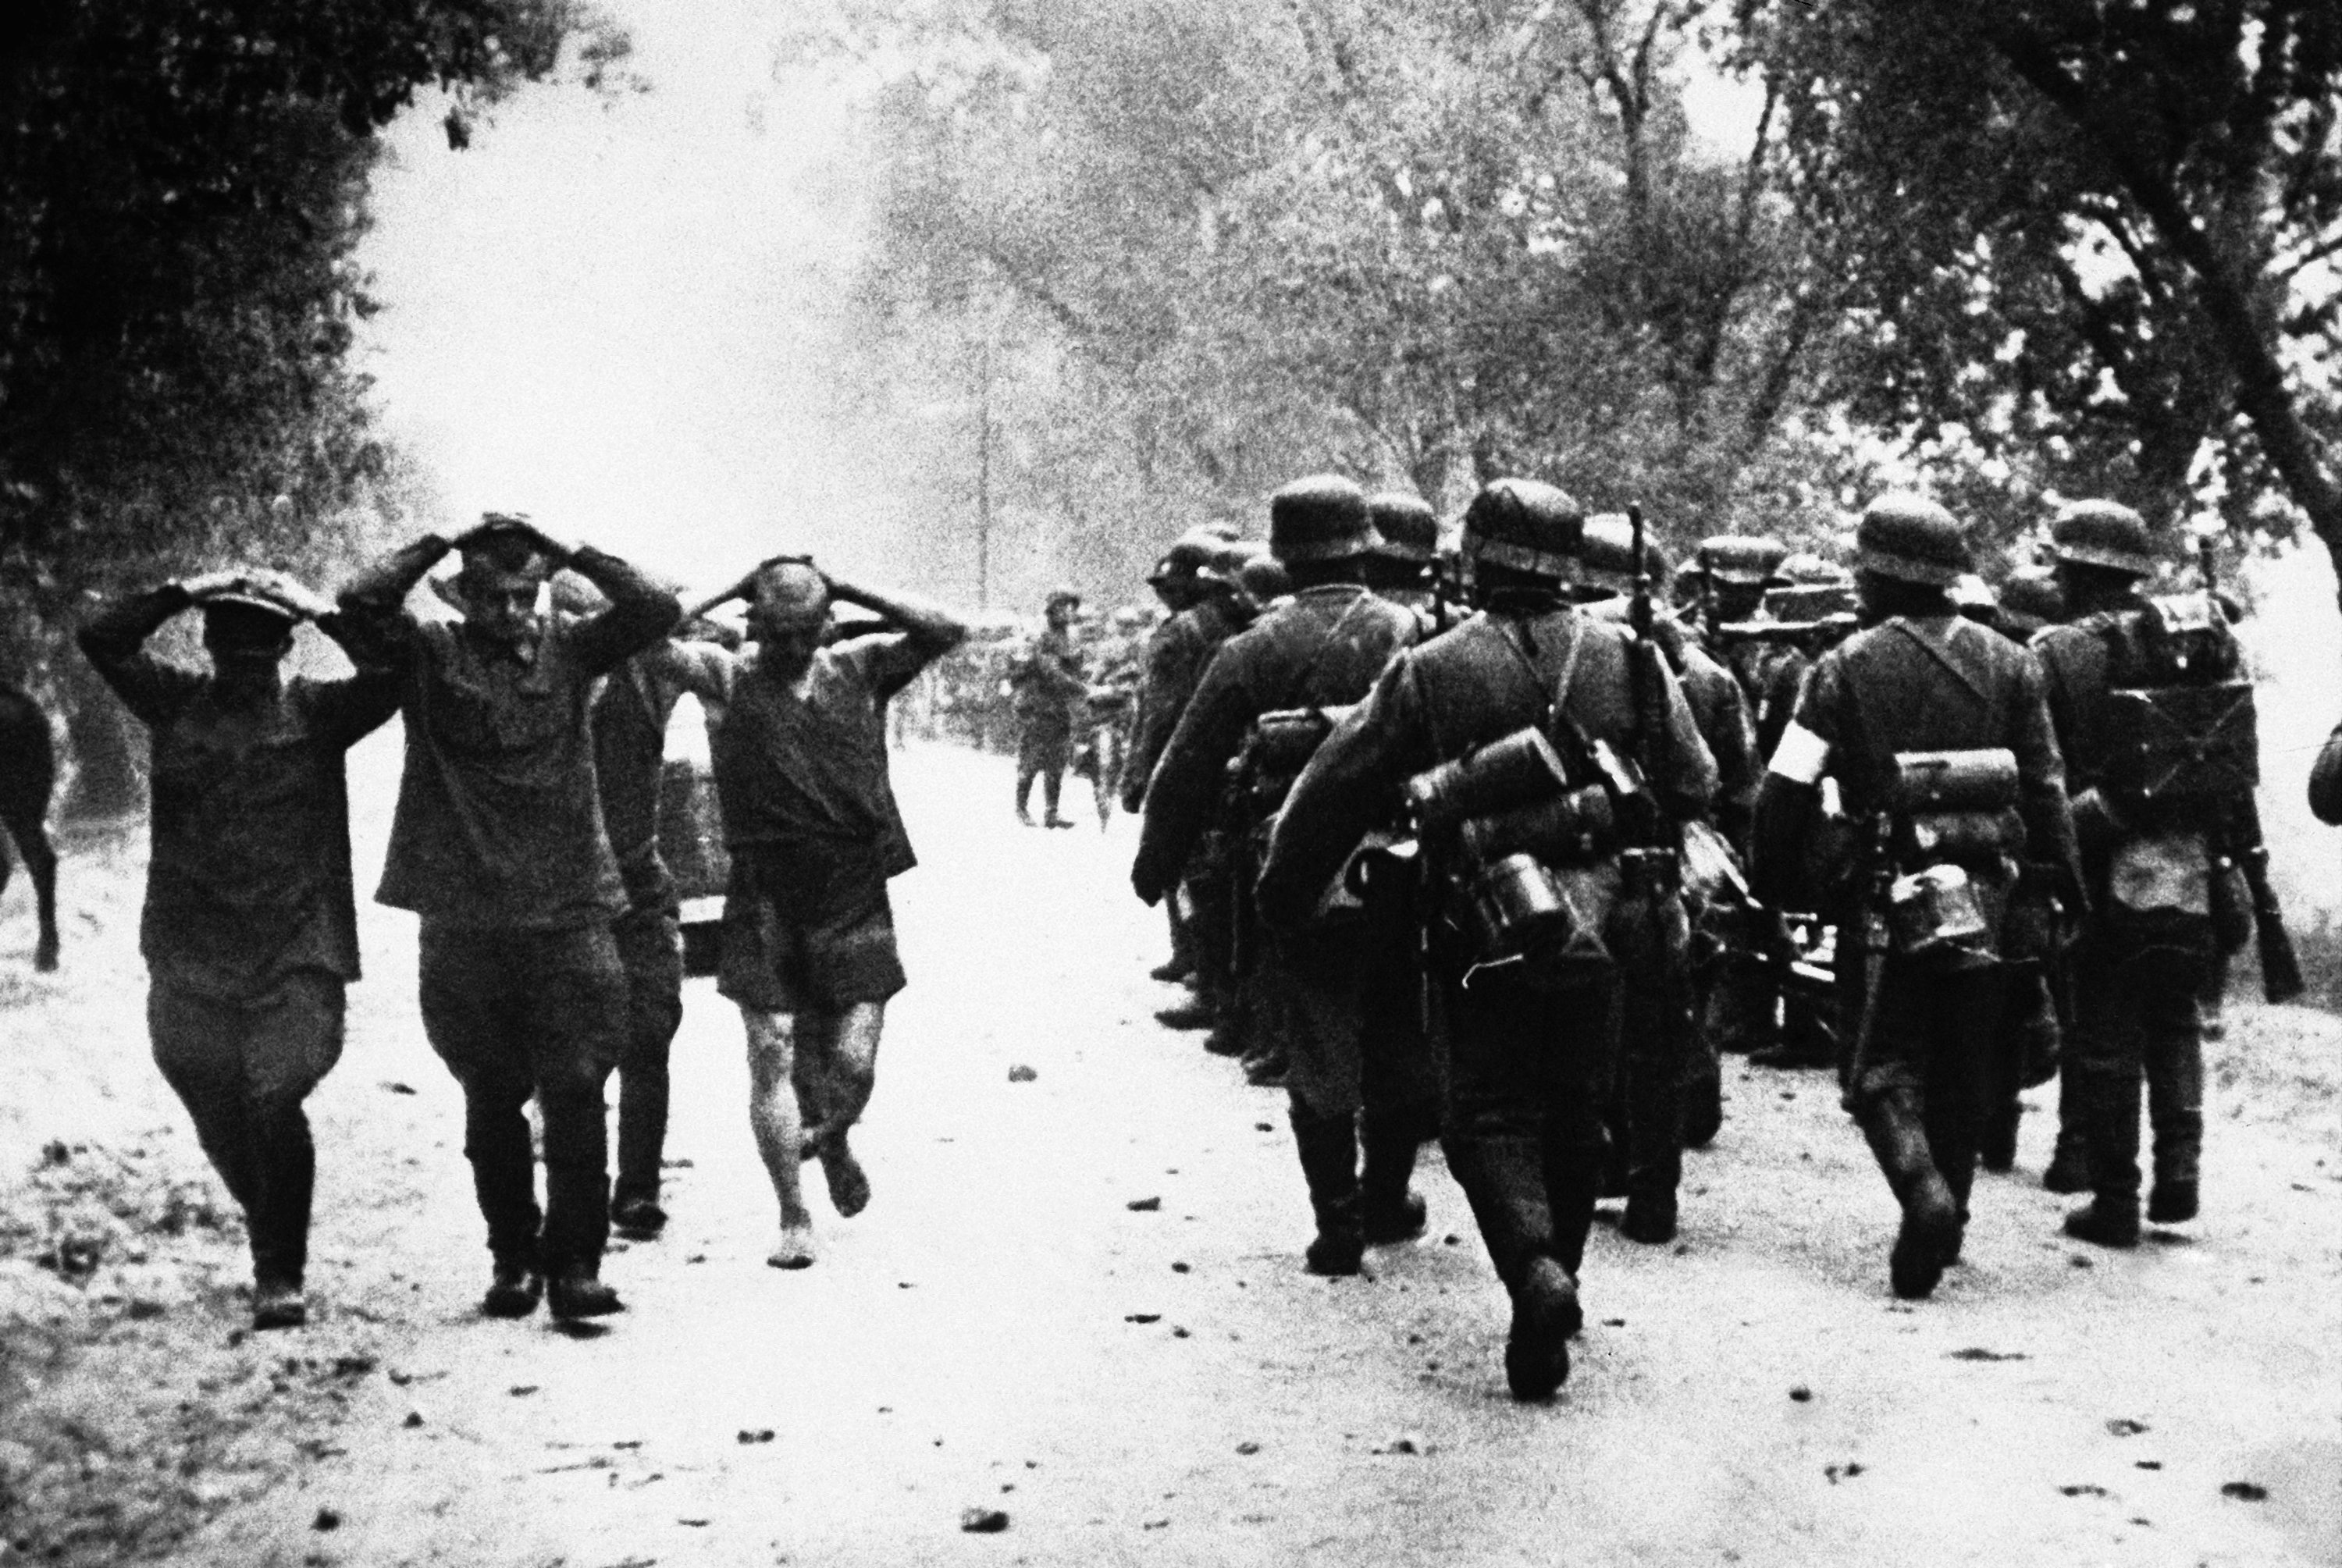 Немецкие войска пересекают границу советского Союза 22 июня 1941 1941